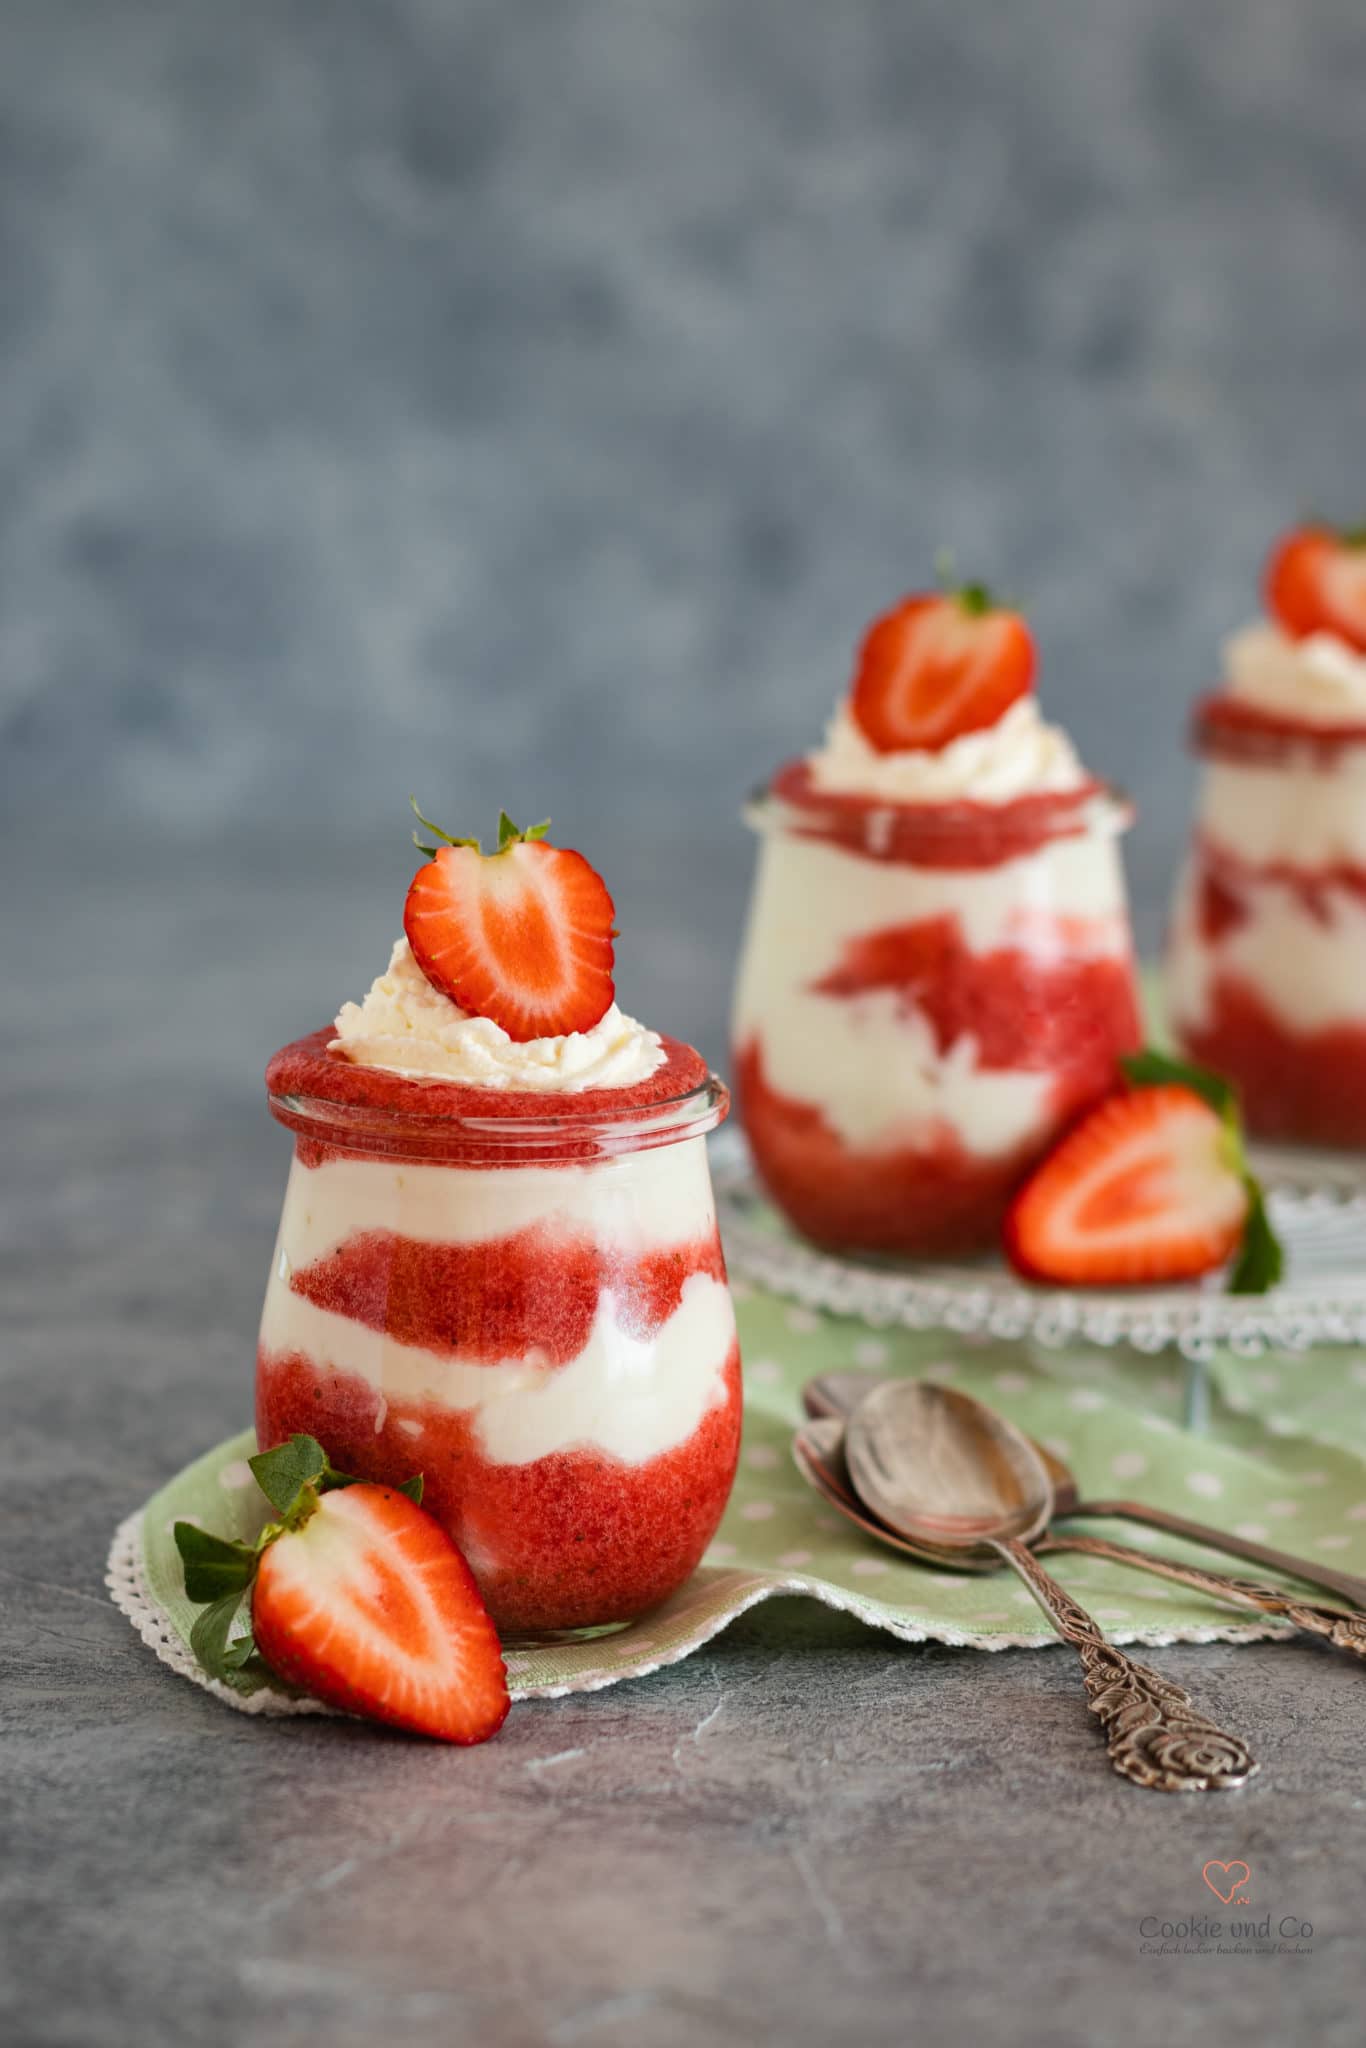 Erdbeer Mascarpone Dessert Löffelbiskuit Im Glas - information online